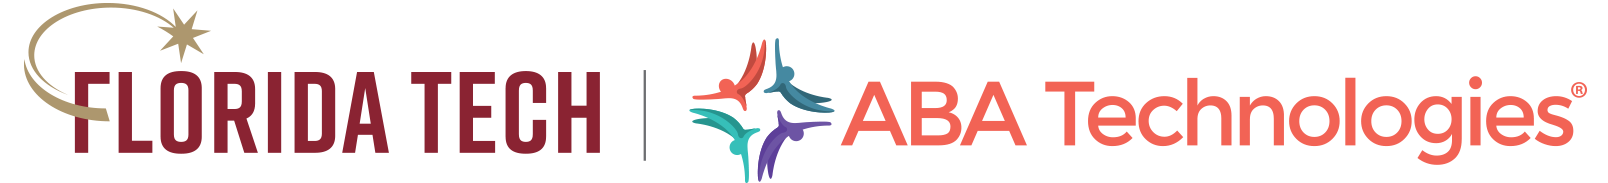 Florida Tech Logo and ABA Tech Logo